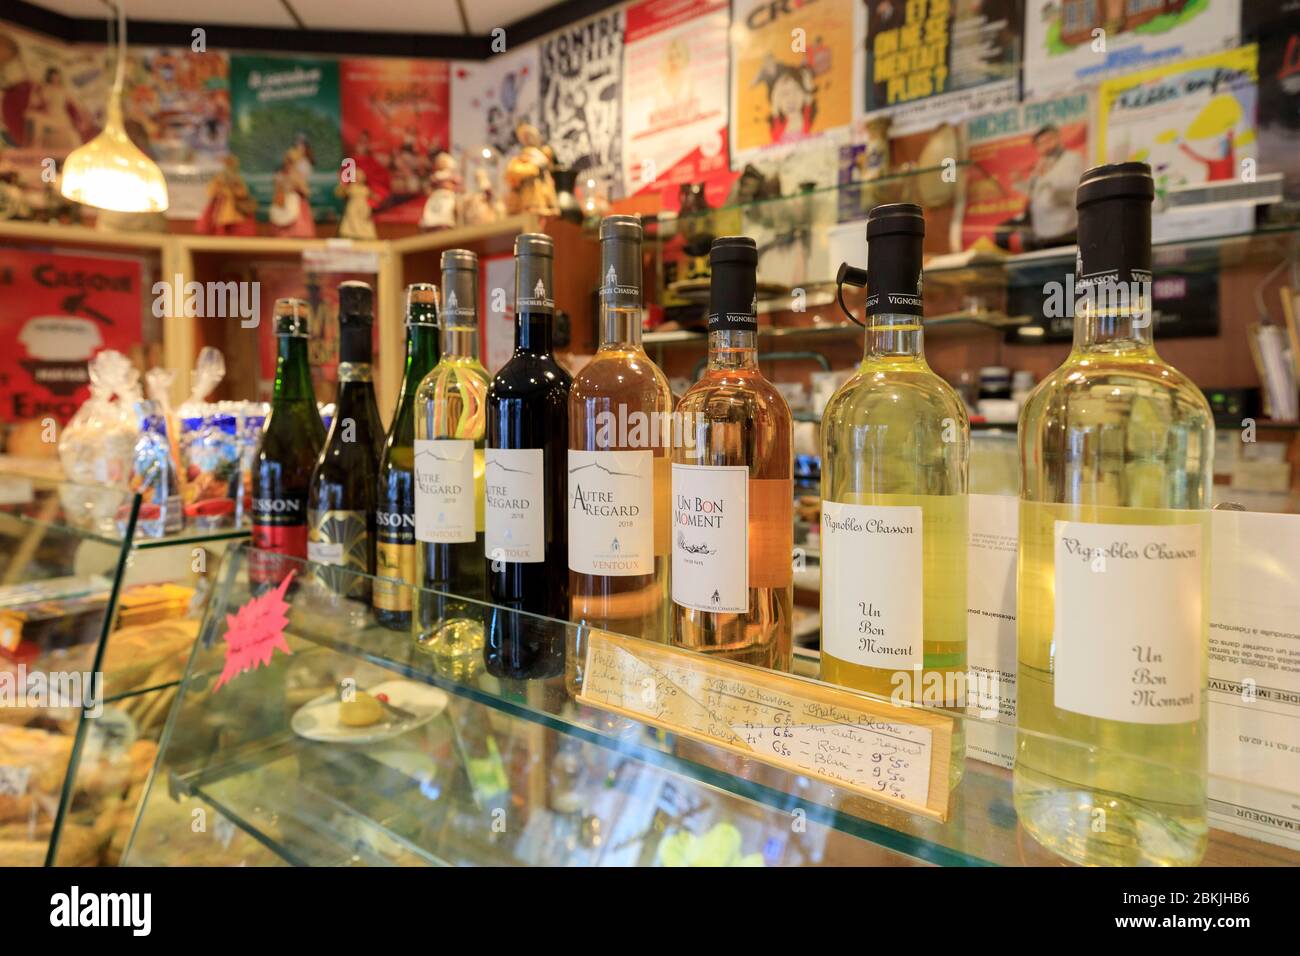 Frankreich, Vaucluse, Avignon, Bäckerei La Pause Gourmande, Weinflaschen Stockfoto